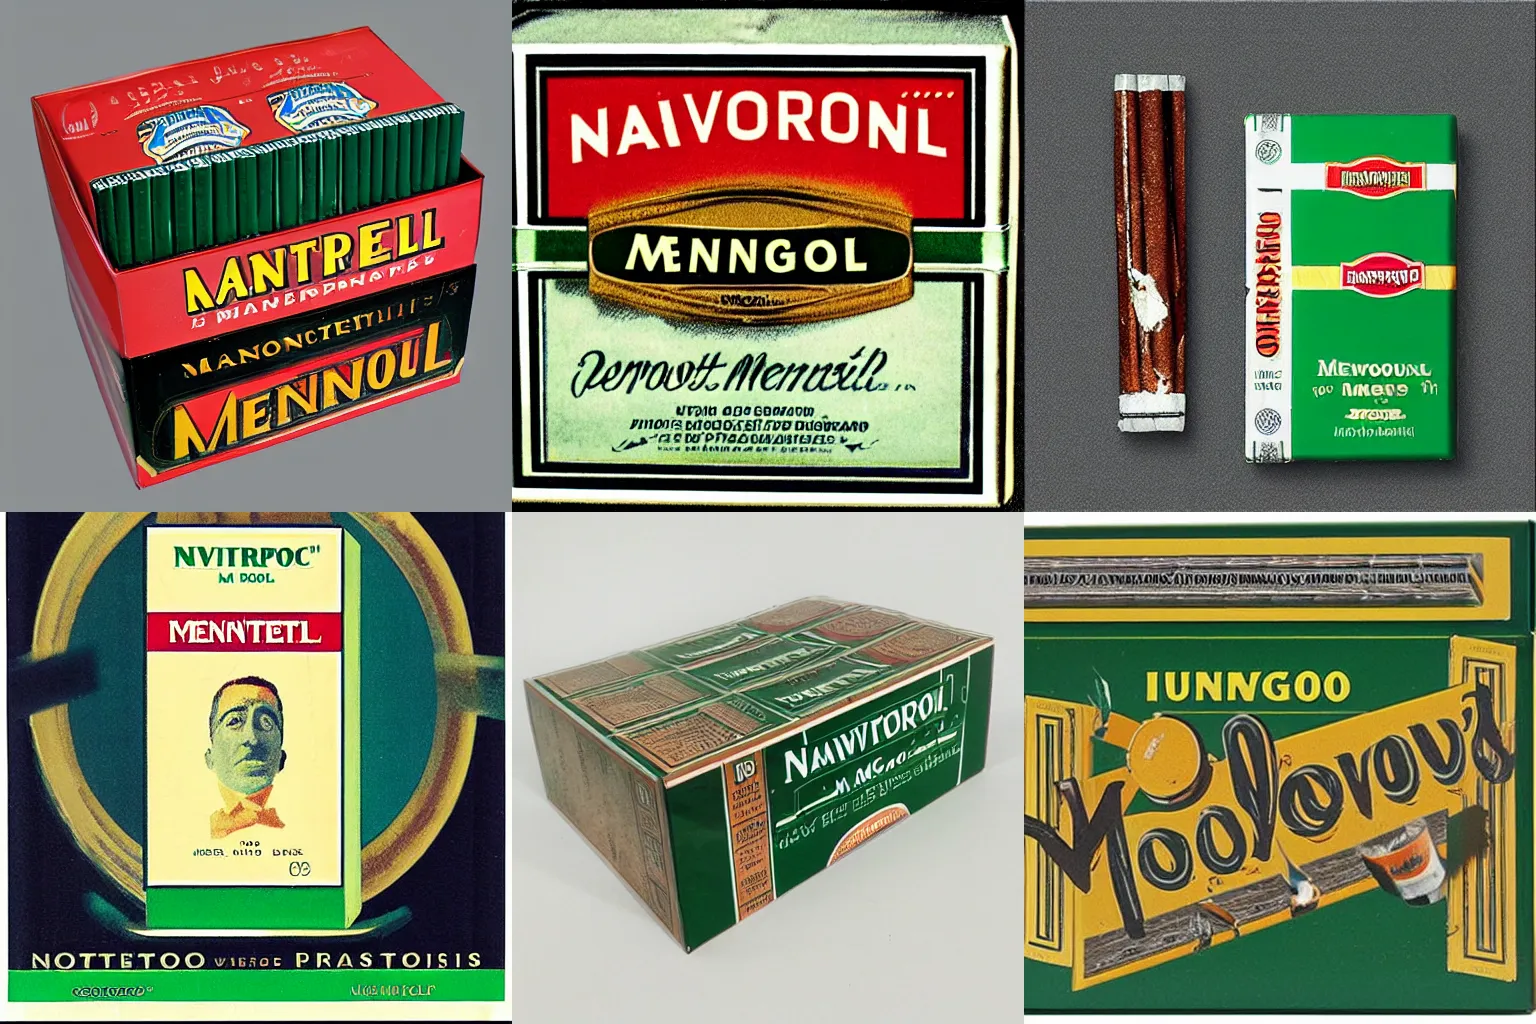 Prompt: “Newport Cigarettes Menthol 100s Box”